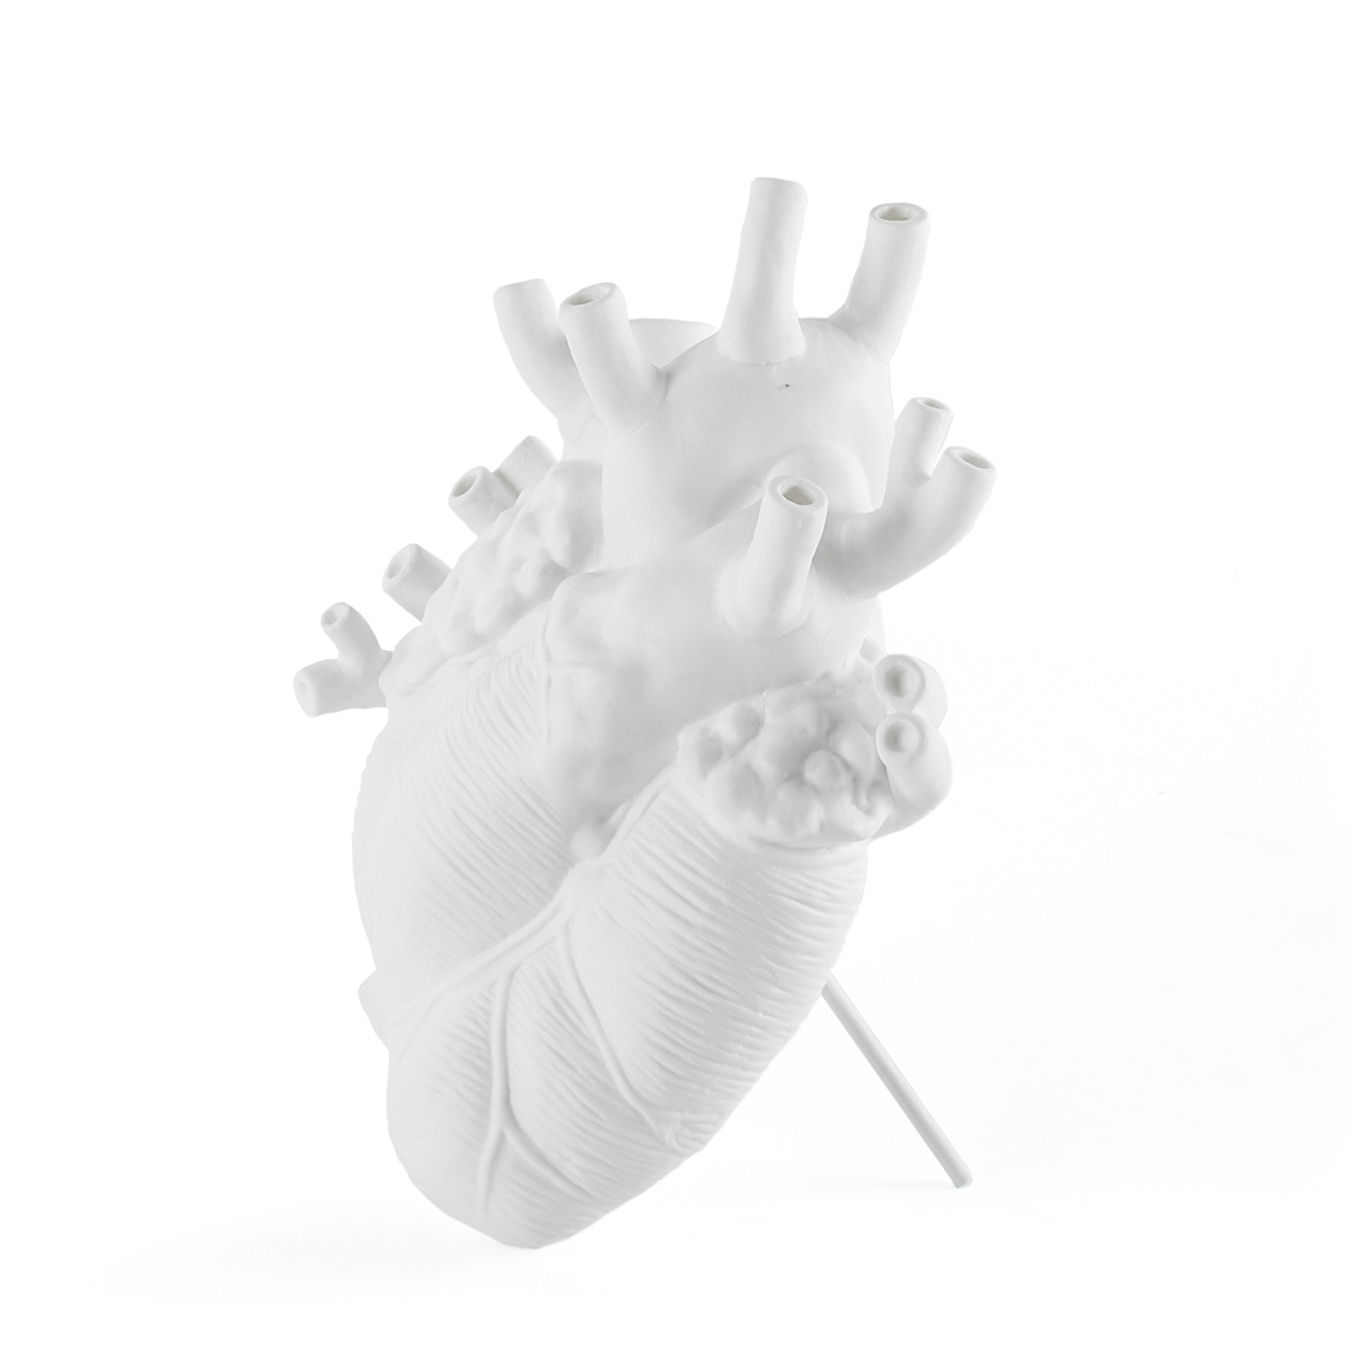 SELETTI - LOVE IN BLOOM, La perfetta riproduzione anatomica di un cuore  umano, realizzata in delicato vetro soffiato, è la nuova e speciale  versione di Love in Bloom, il celebre